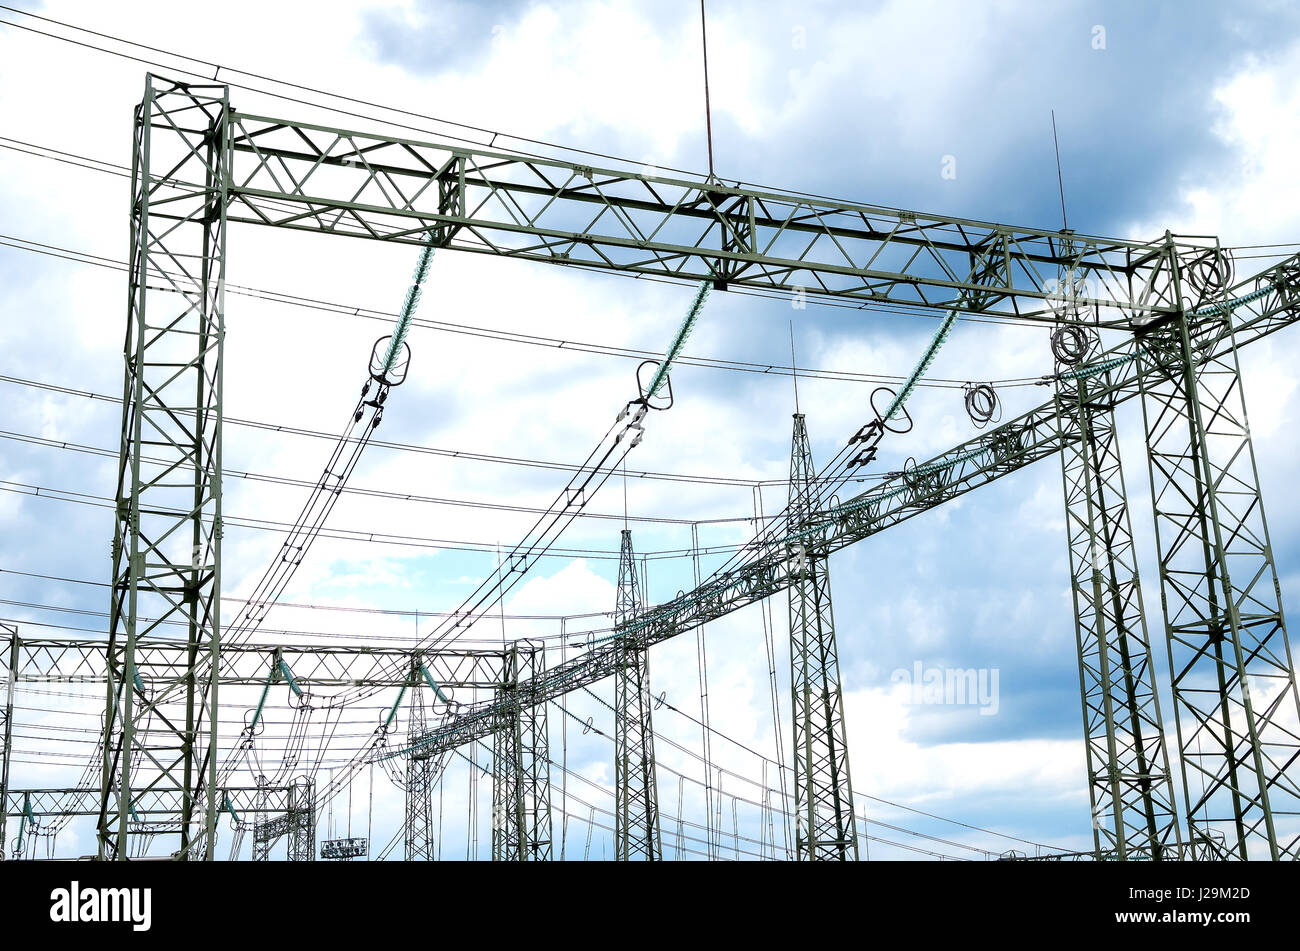 Stromverteilung. Elemente der elektrischen Pylon - Isolatoren, Kabel und Befestigungen Stockfoto